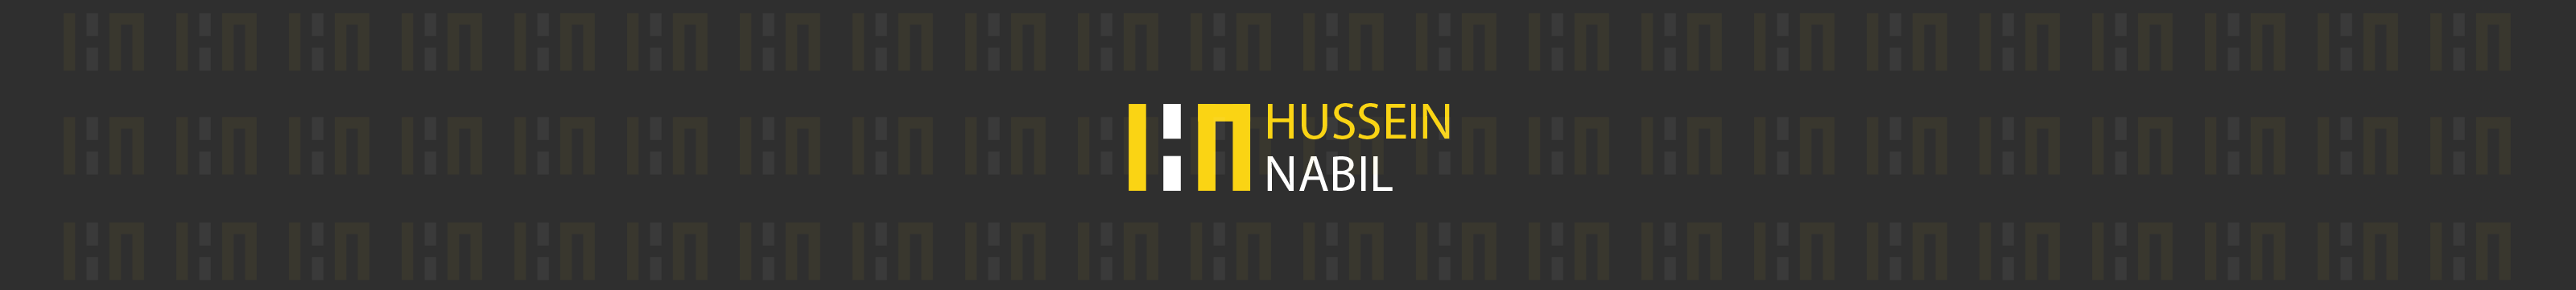 Hussein Nabil's profile banner